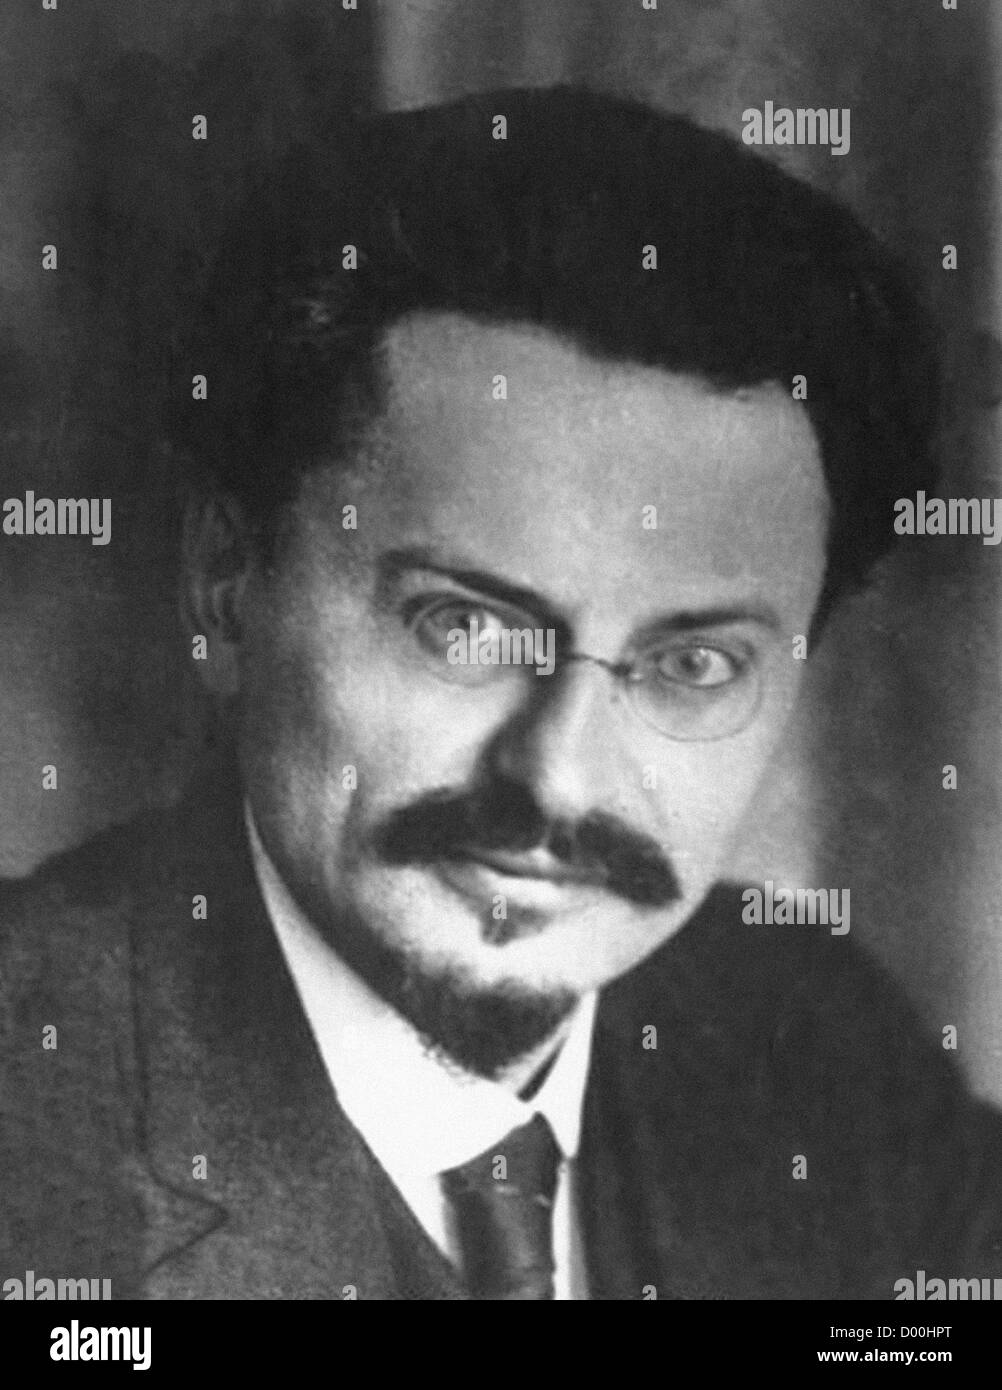 Leon Trotsky, nato Lev Davidovic Bronshtein, era un russo rivoluzionario marxista e teorico, uomo politico sovietico e il fondatore e primo leader dell'Esercito Rosso. Dagli archivi di stampa Ritratto, servizio precedentemente premere ritratto Bureau Foto Stock